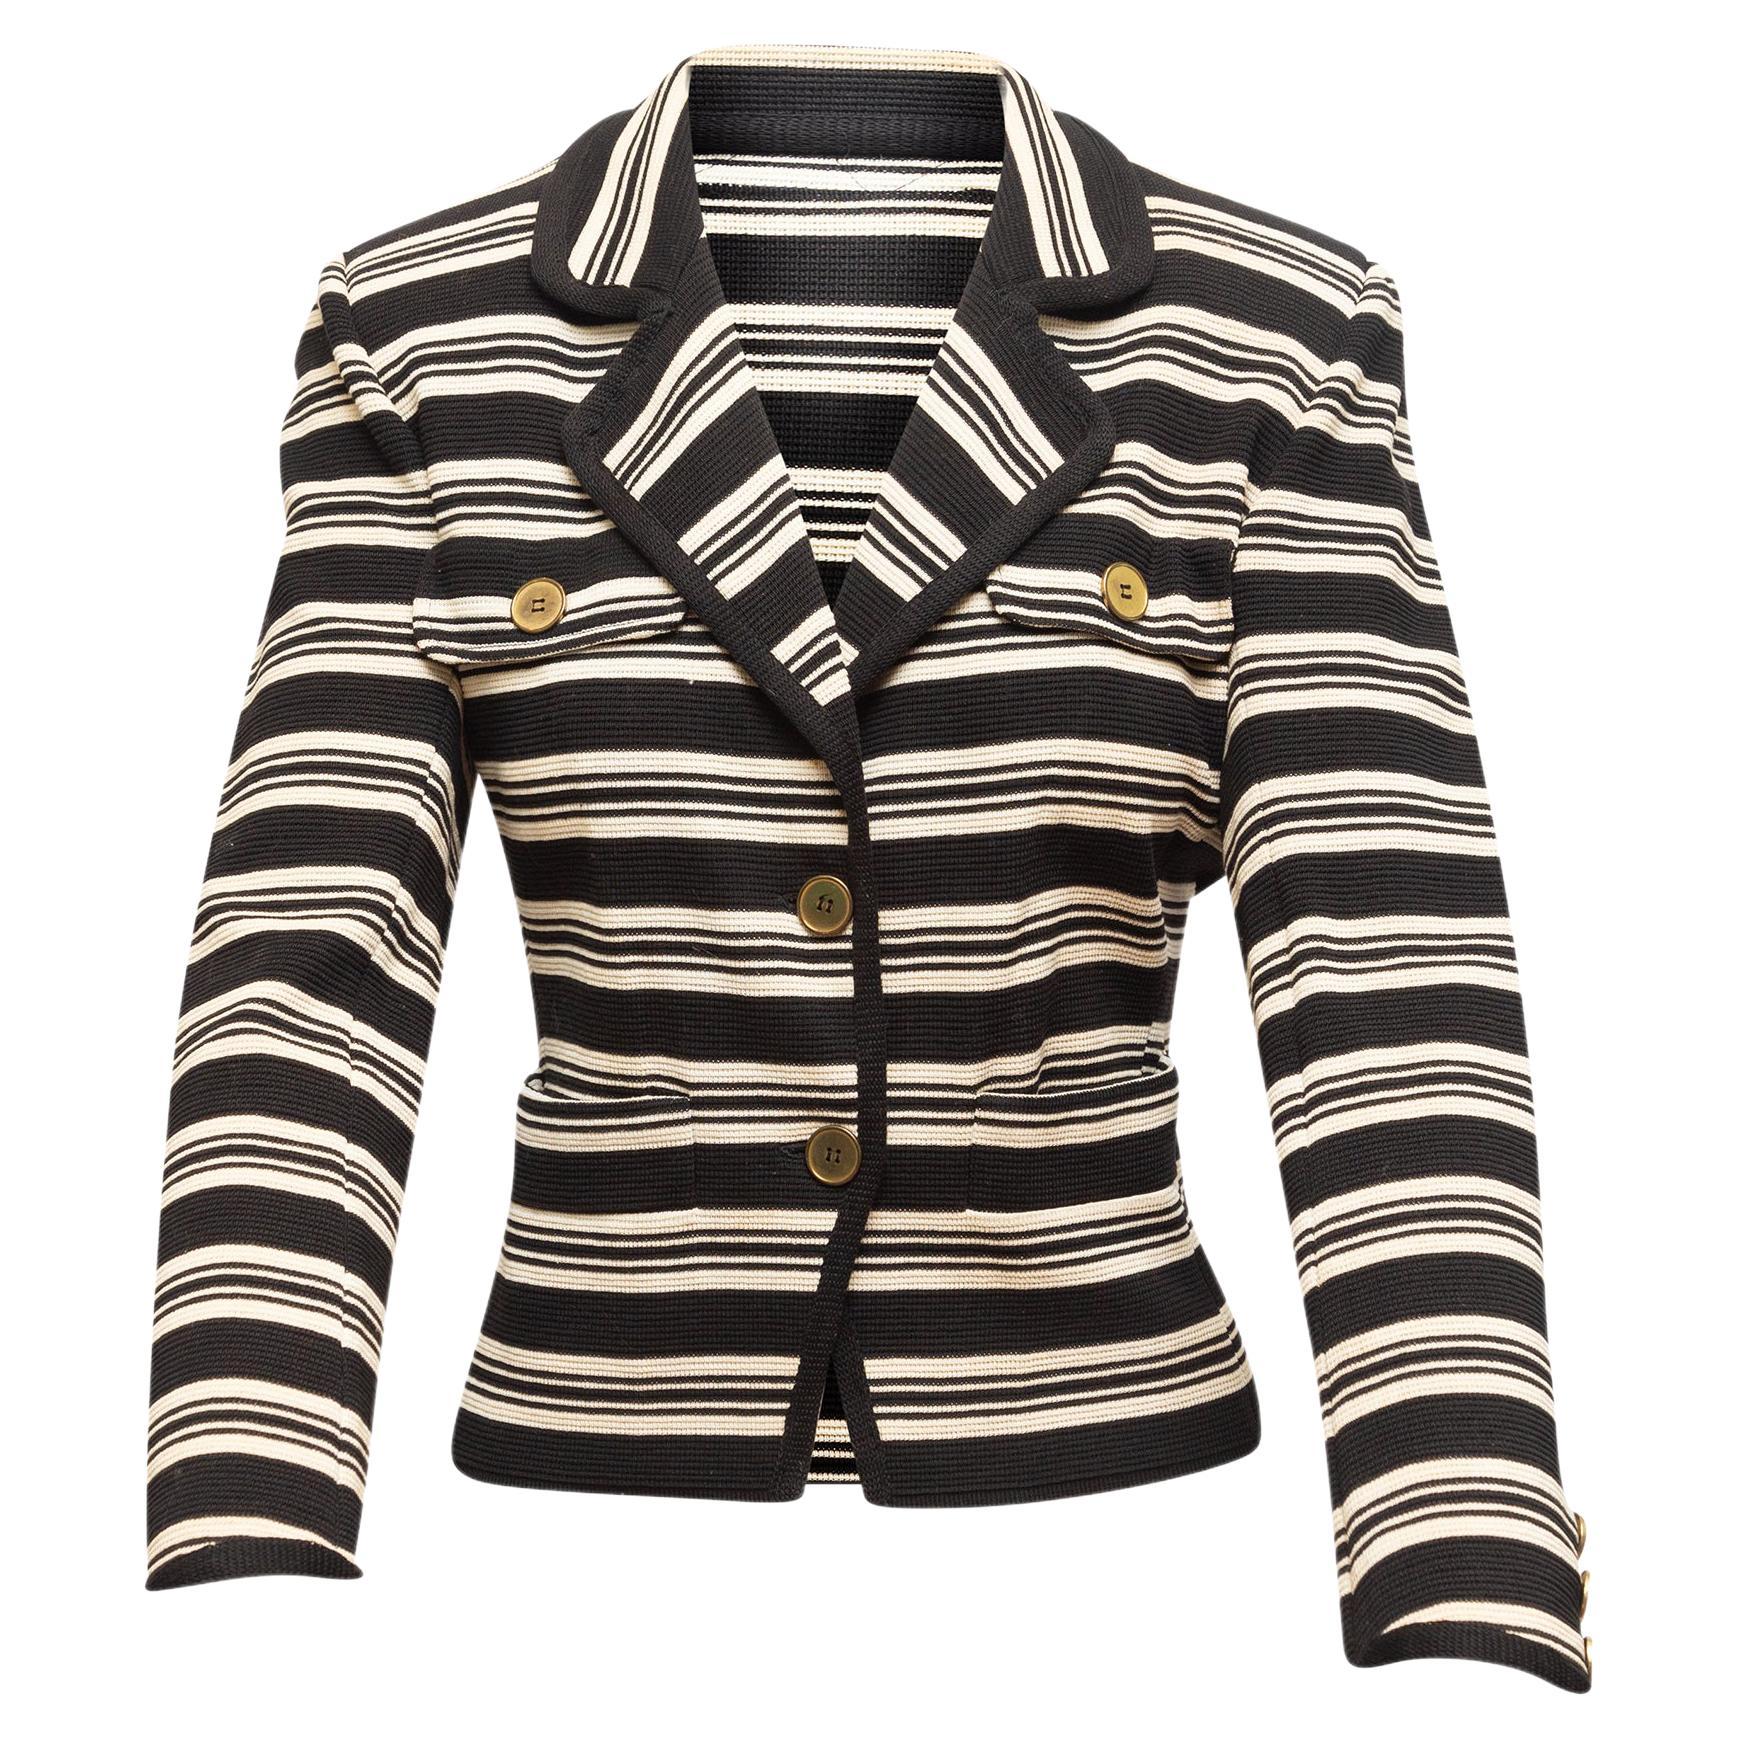 Saint Laurent Black & White Striped Blazer